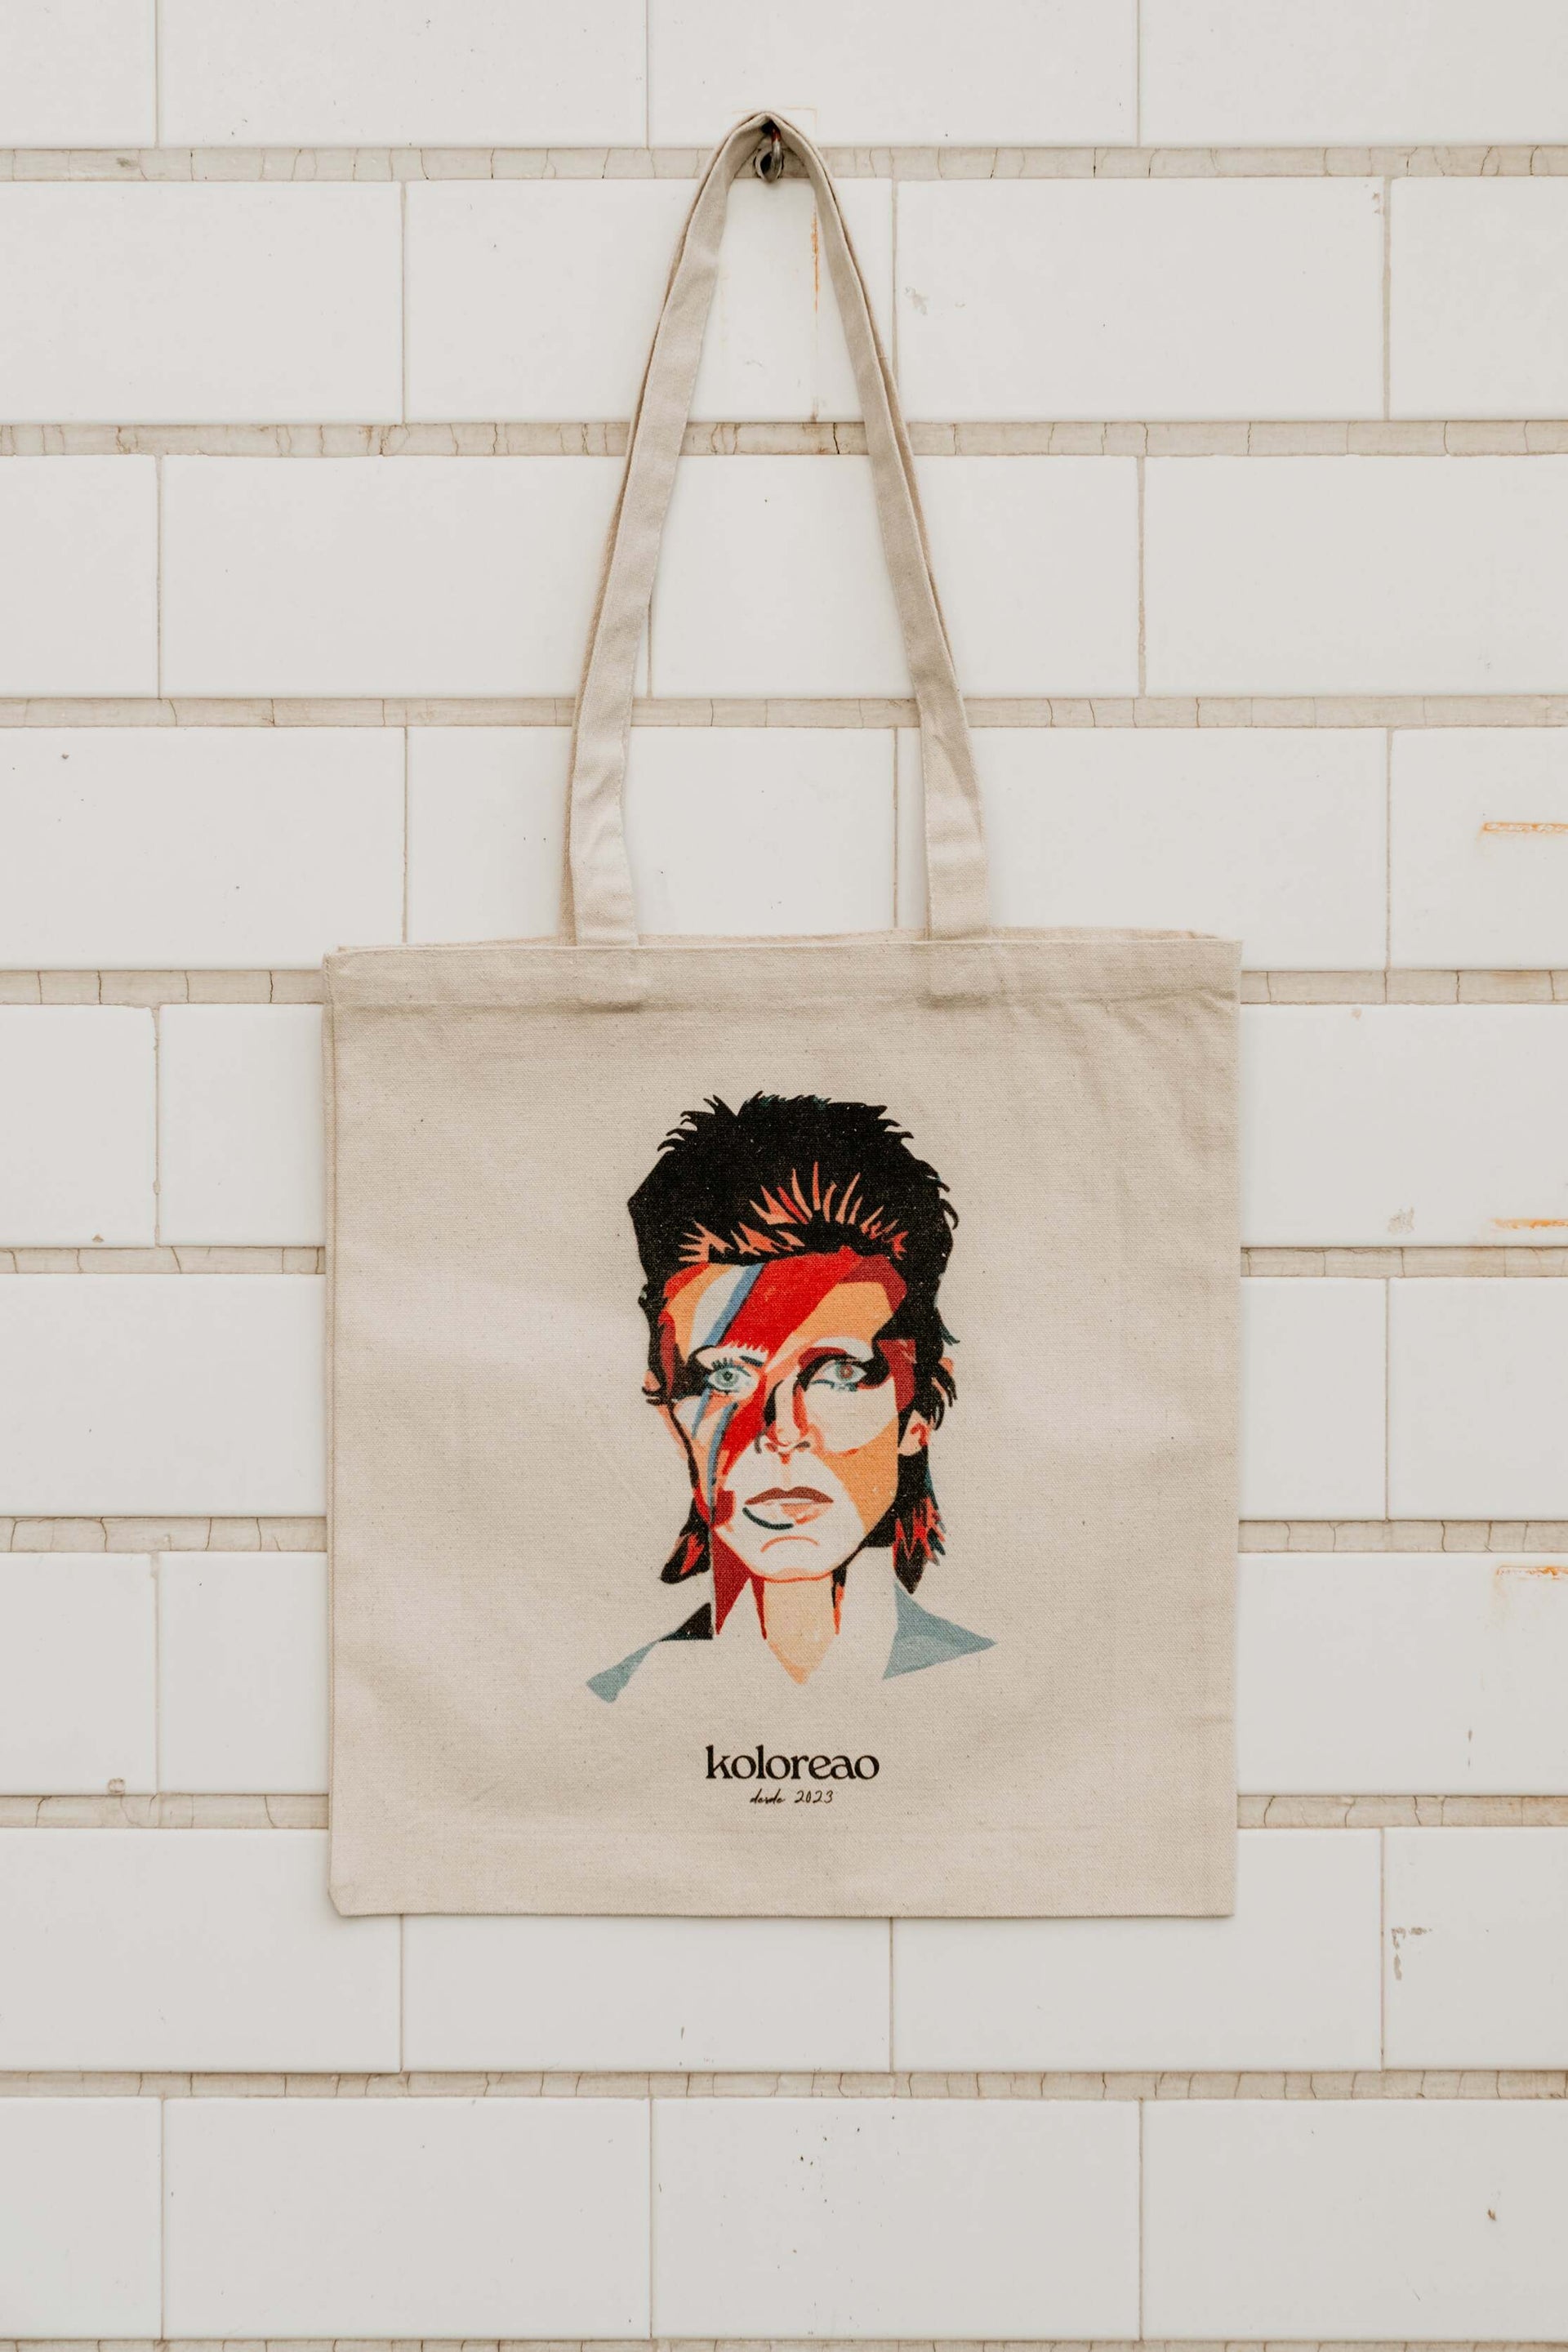 Tote bag tela personalizada David Bowie algodón 100% pintada a mano